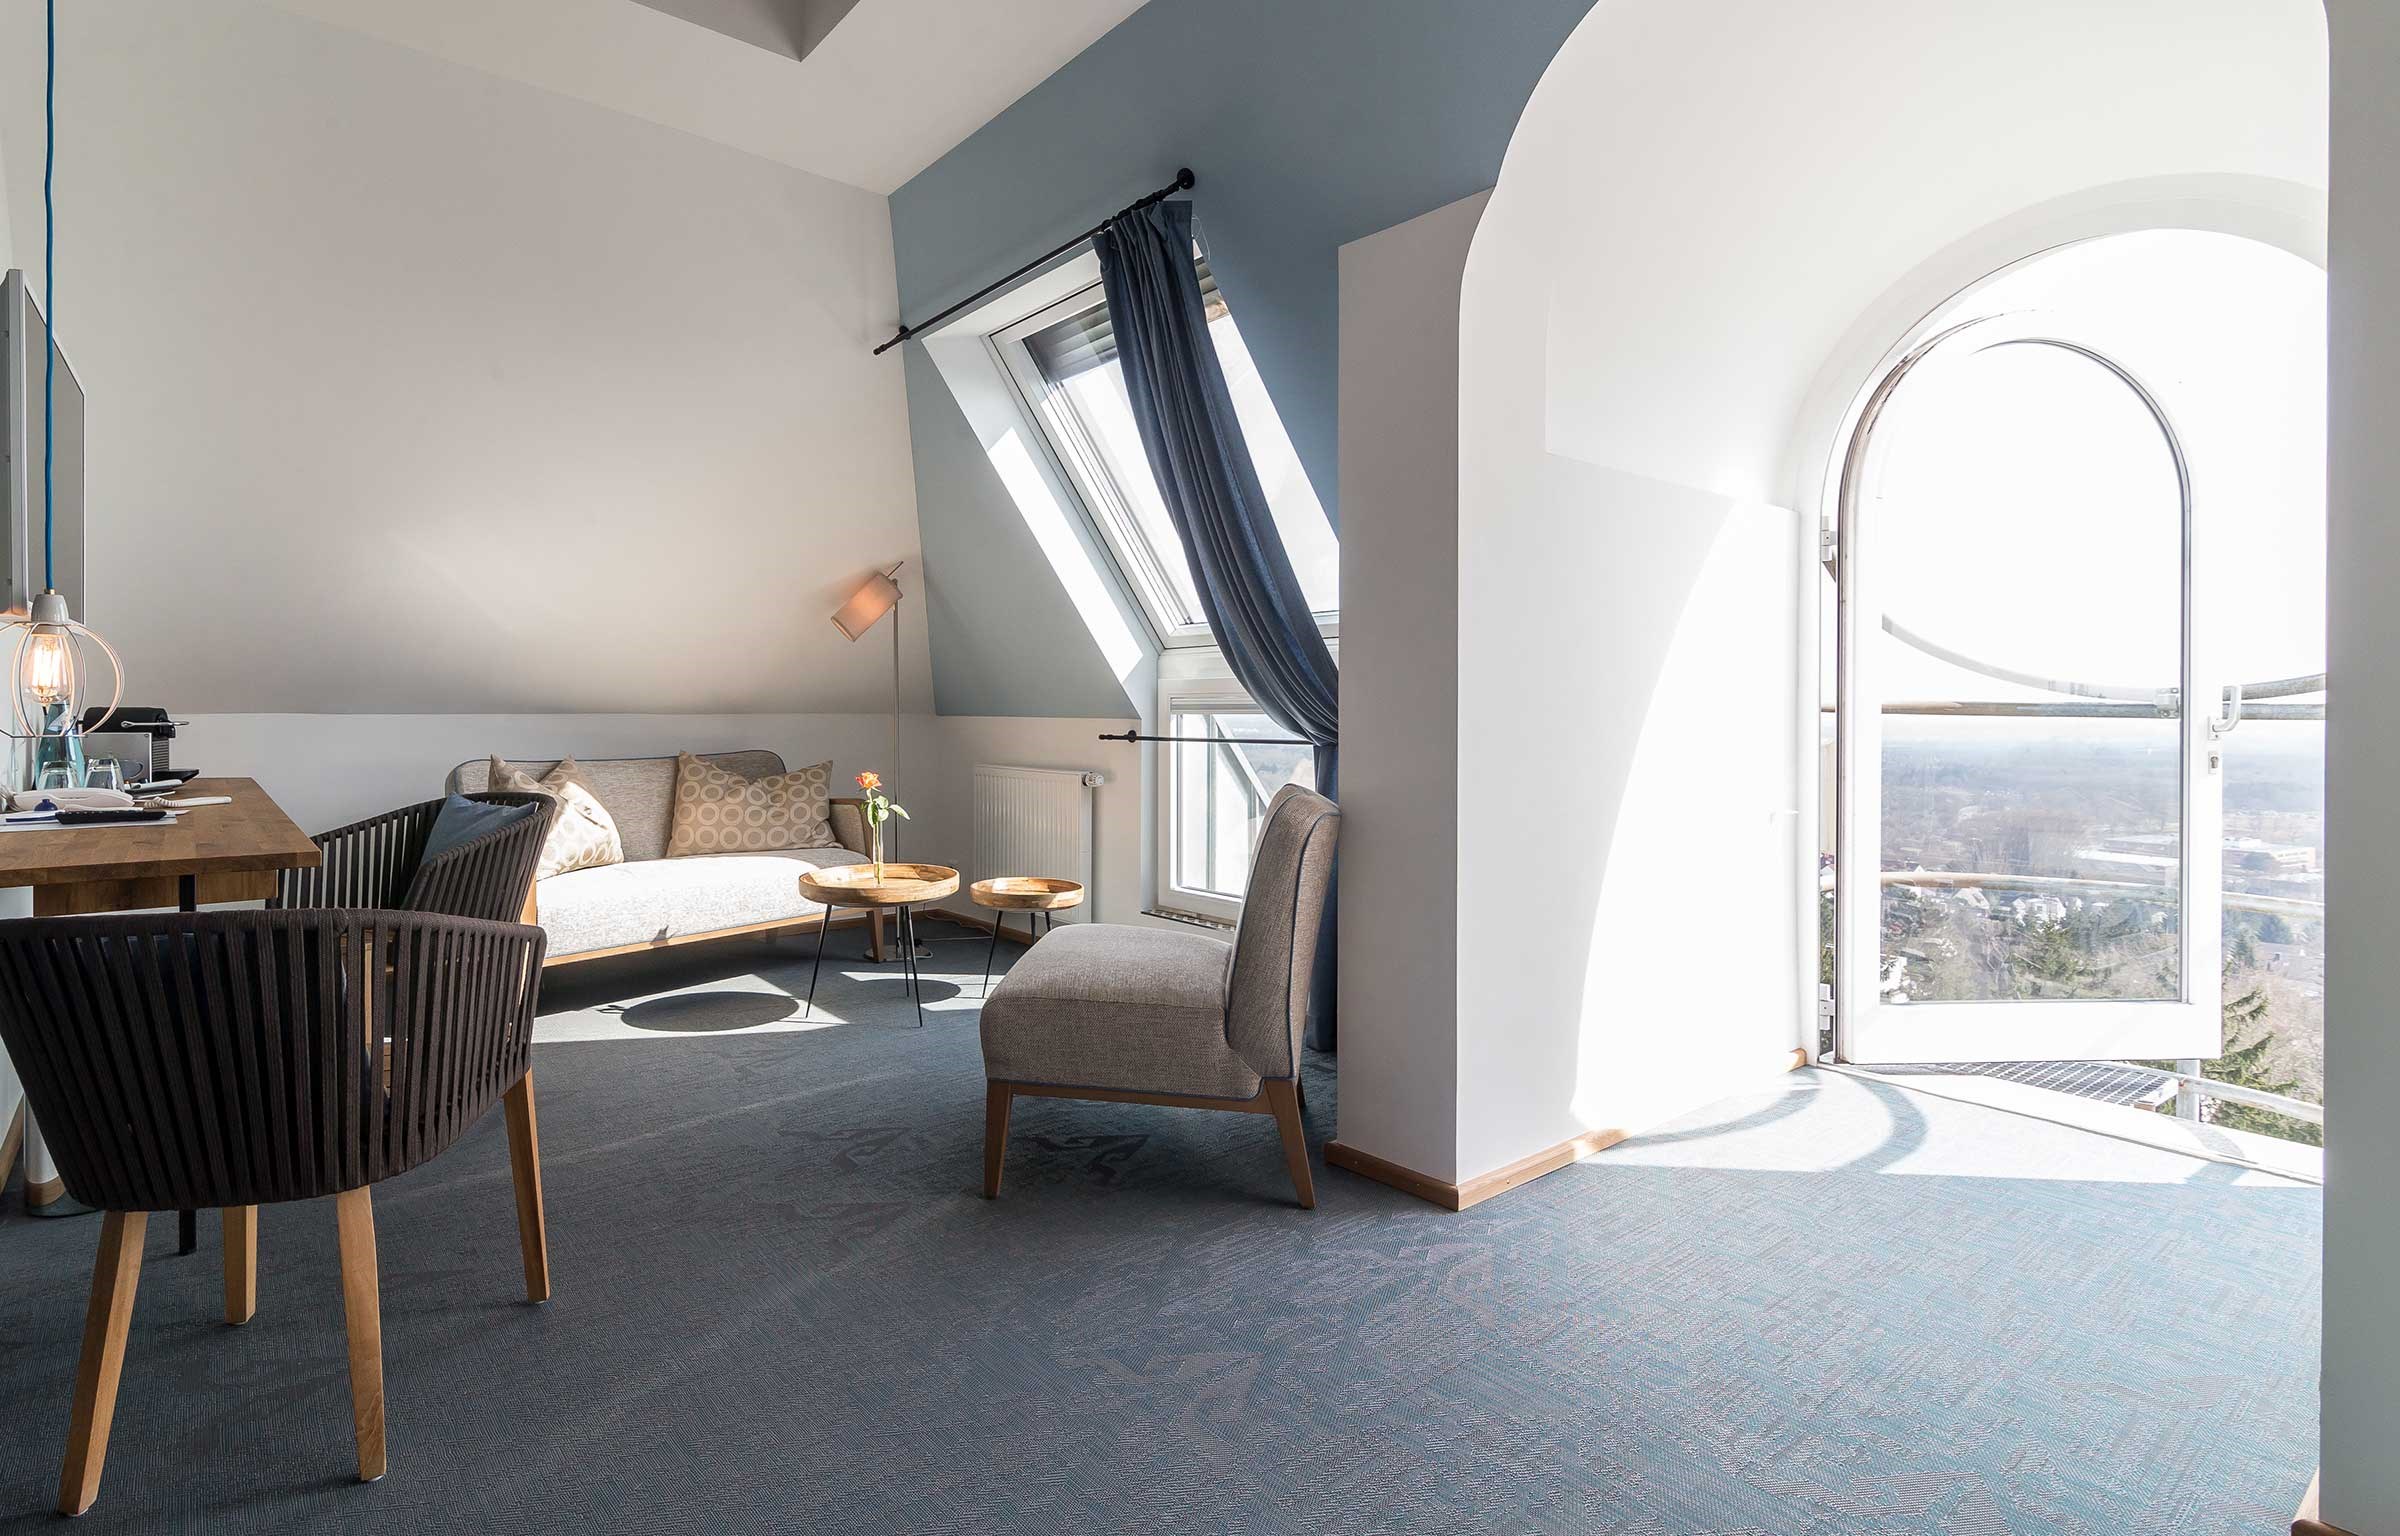 La arquitecta Martina Spiegl de RÄUME + BAUTEN transformó las suites del Hotel Schöne Aussicht, situado en Fráncfort, Alemania. Inspirada en la tranquilidad